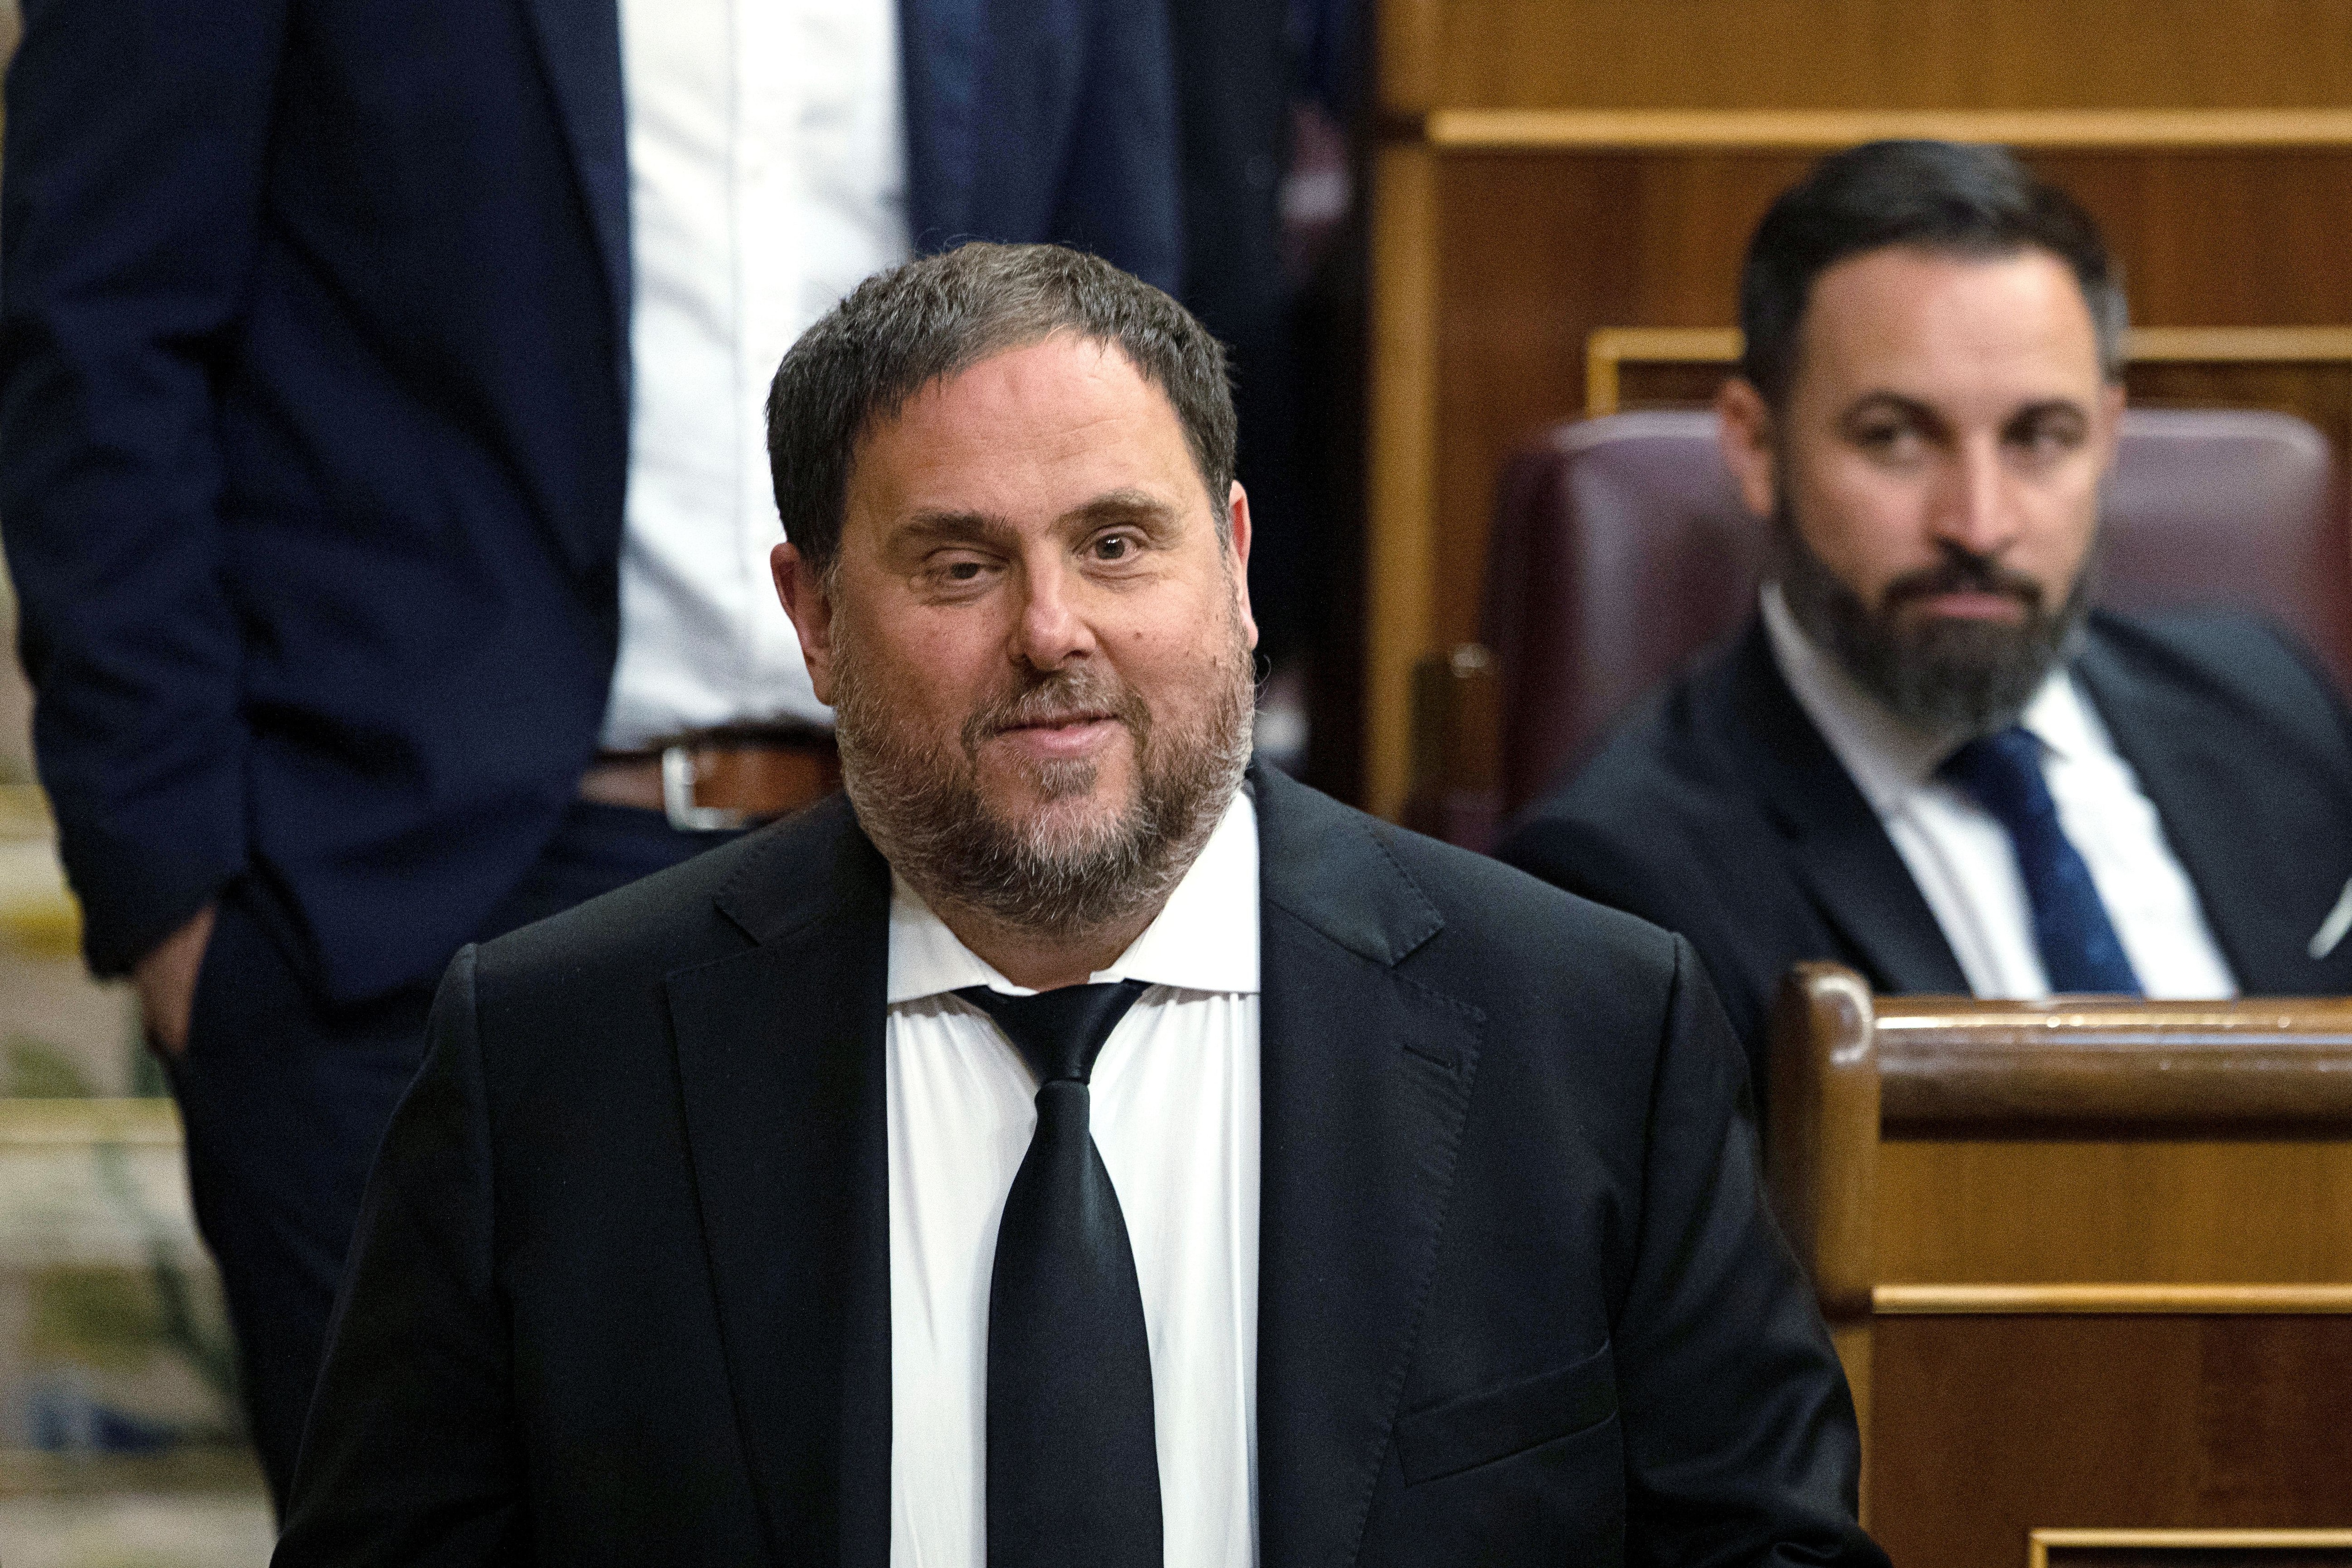 Oriol Junqueras en el Parlamento, el 21 de mayo de 2019, antes de ser arrestado (Pablo Blazquez/Pool via REUTERS/File Photo)